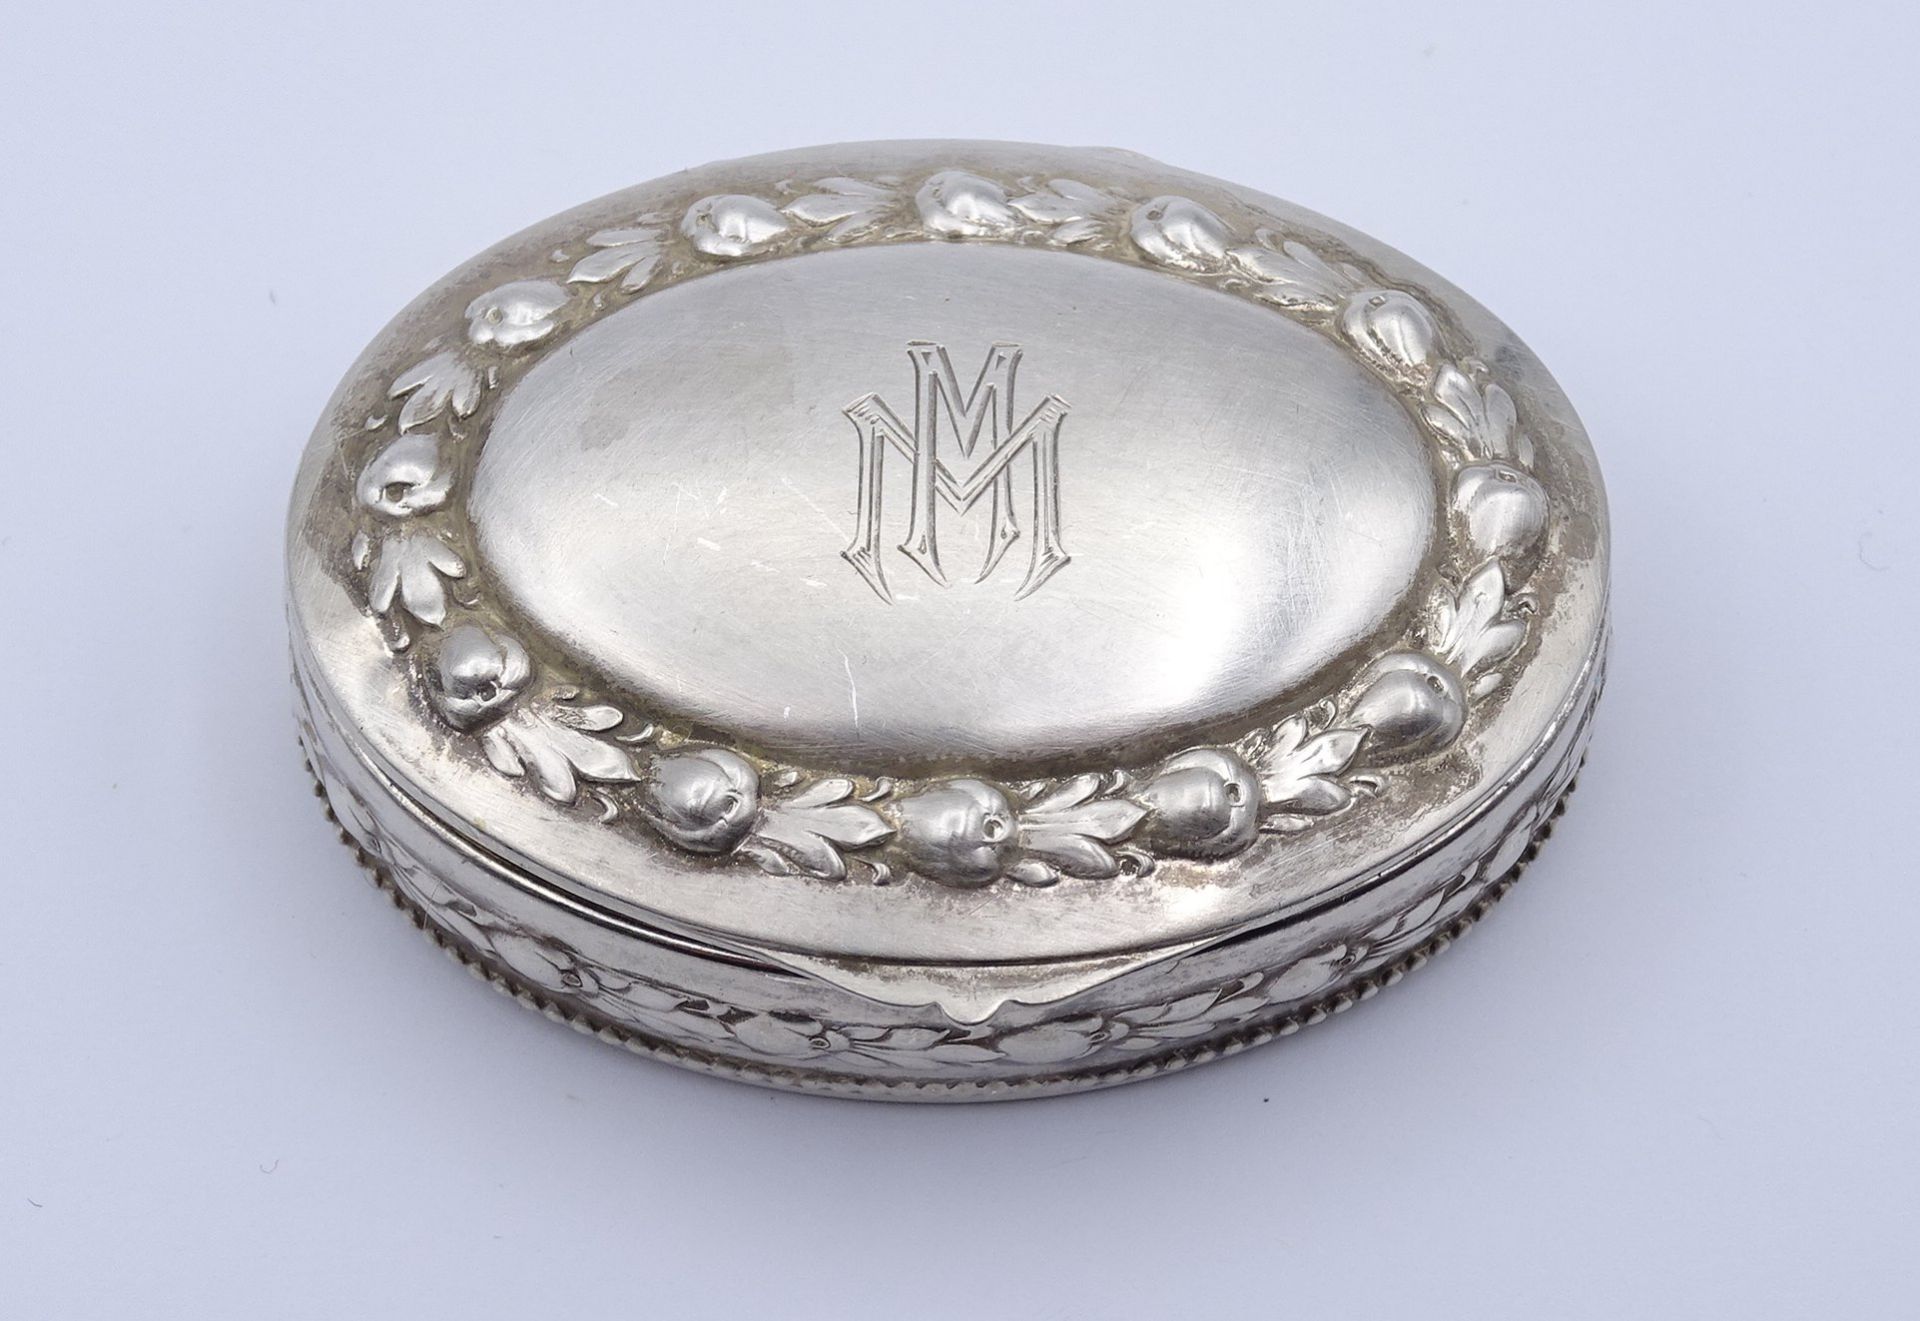 Ovale Pillendose mit Ziermonogramm, Silber 0.800, 17g., 55 x 40mm